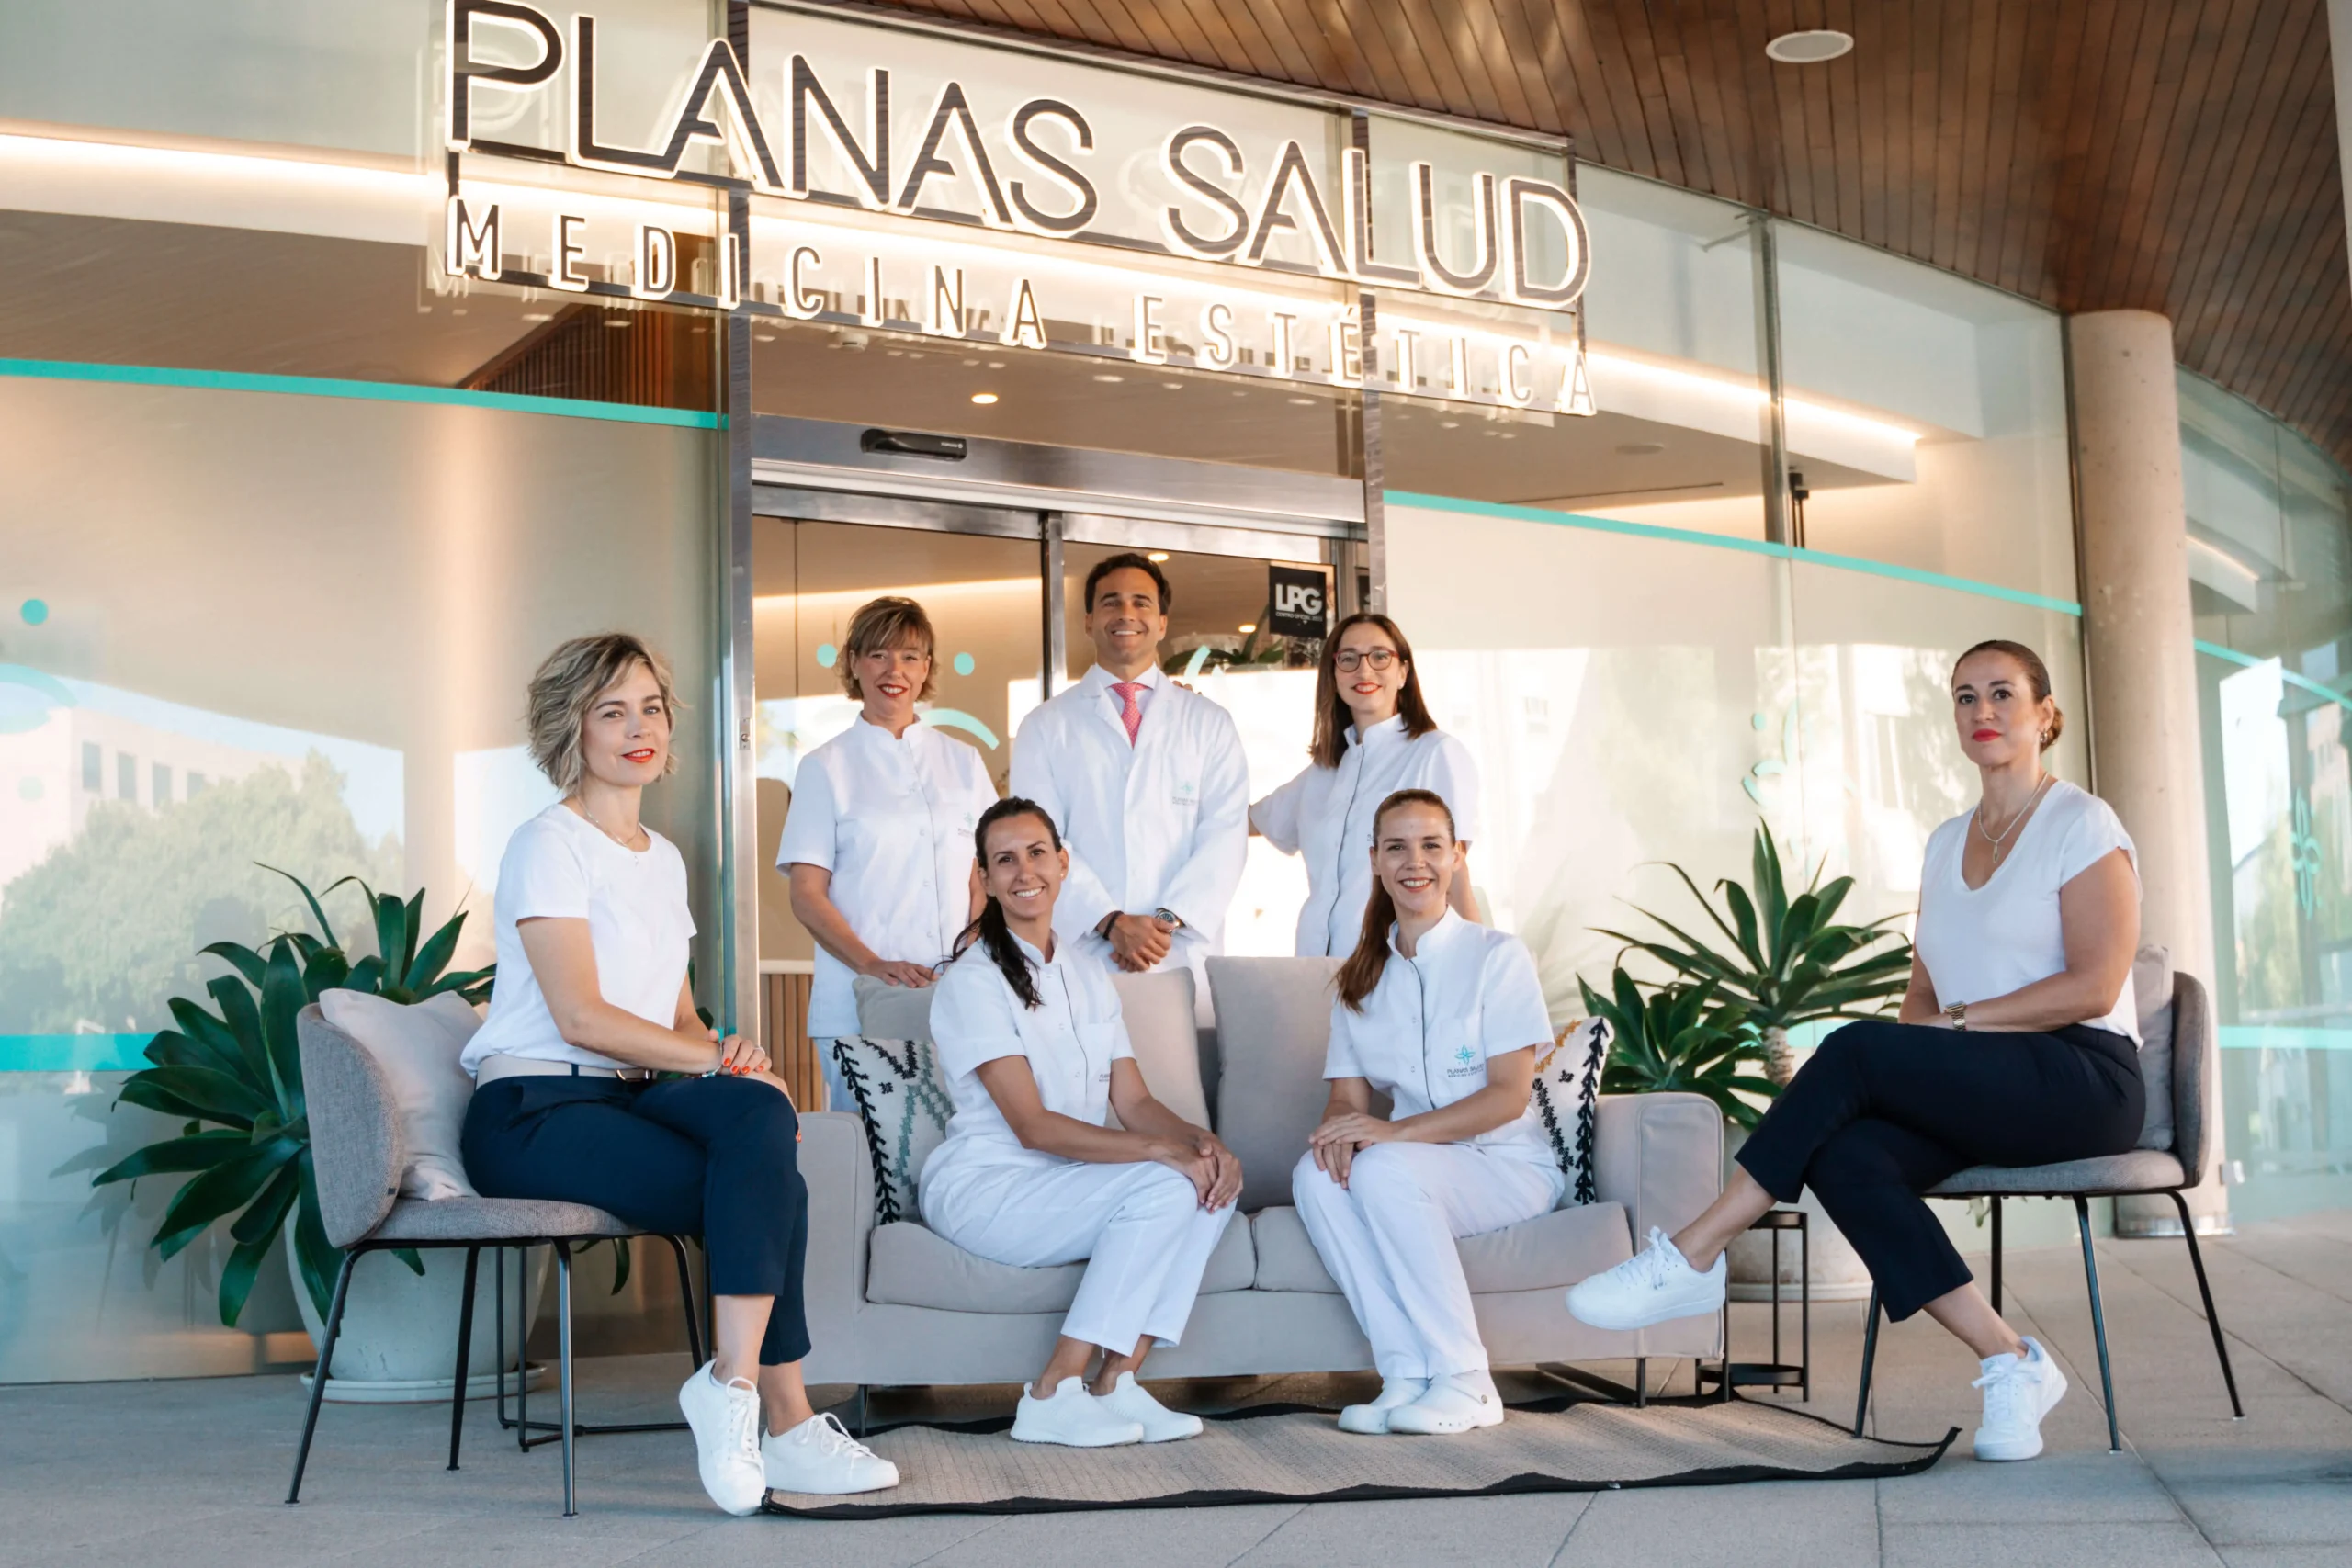 Centro de Dermatología Estética Planas Salud: Tu Piel en las Mejores Manos de Palma